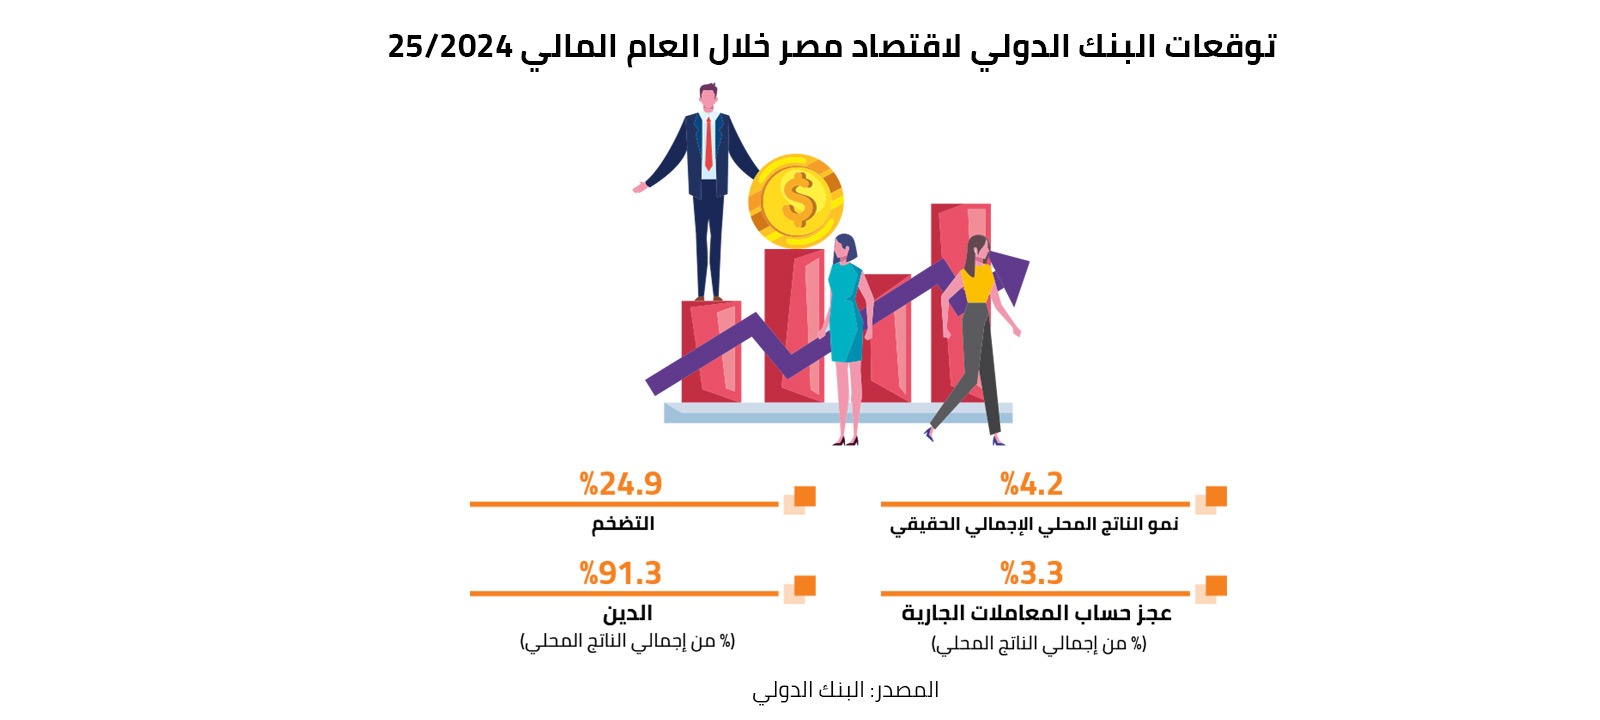 توقعات البنك الدولي لاقتصاد مصر خلال العام المالي 2024/25